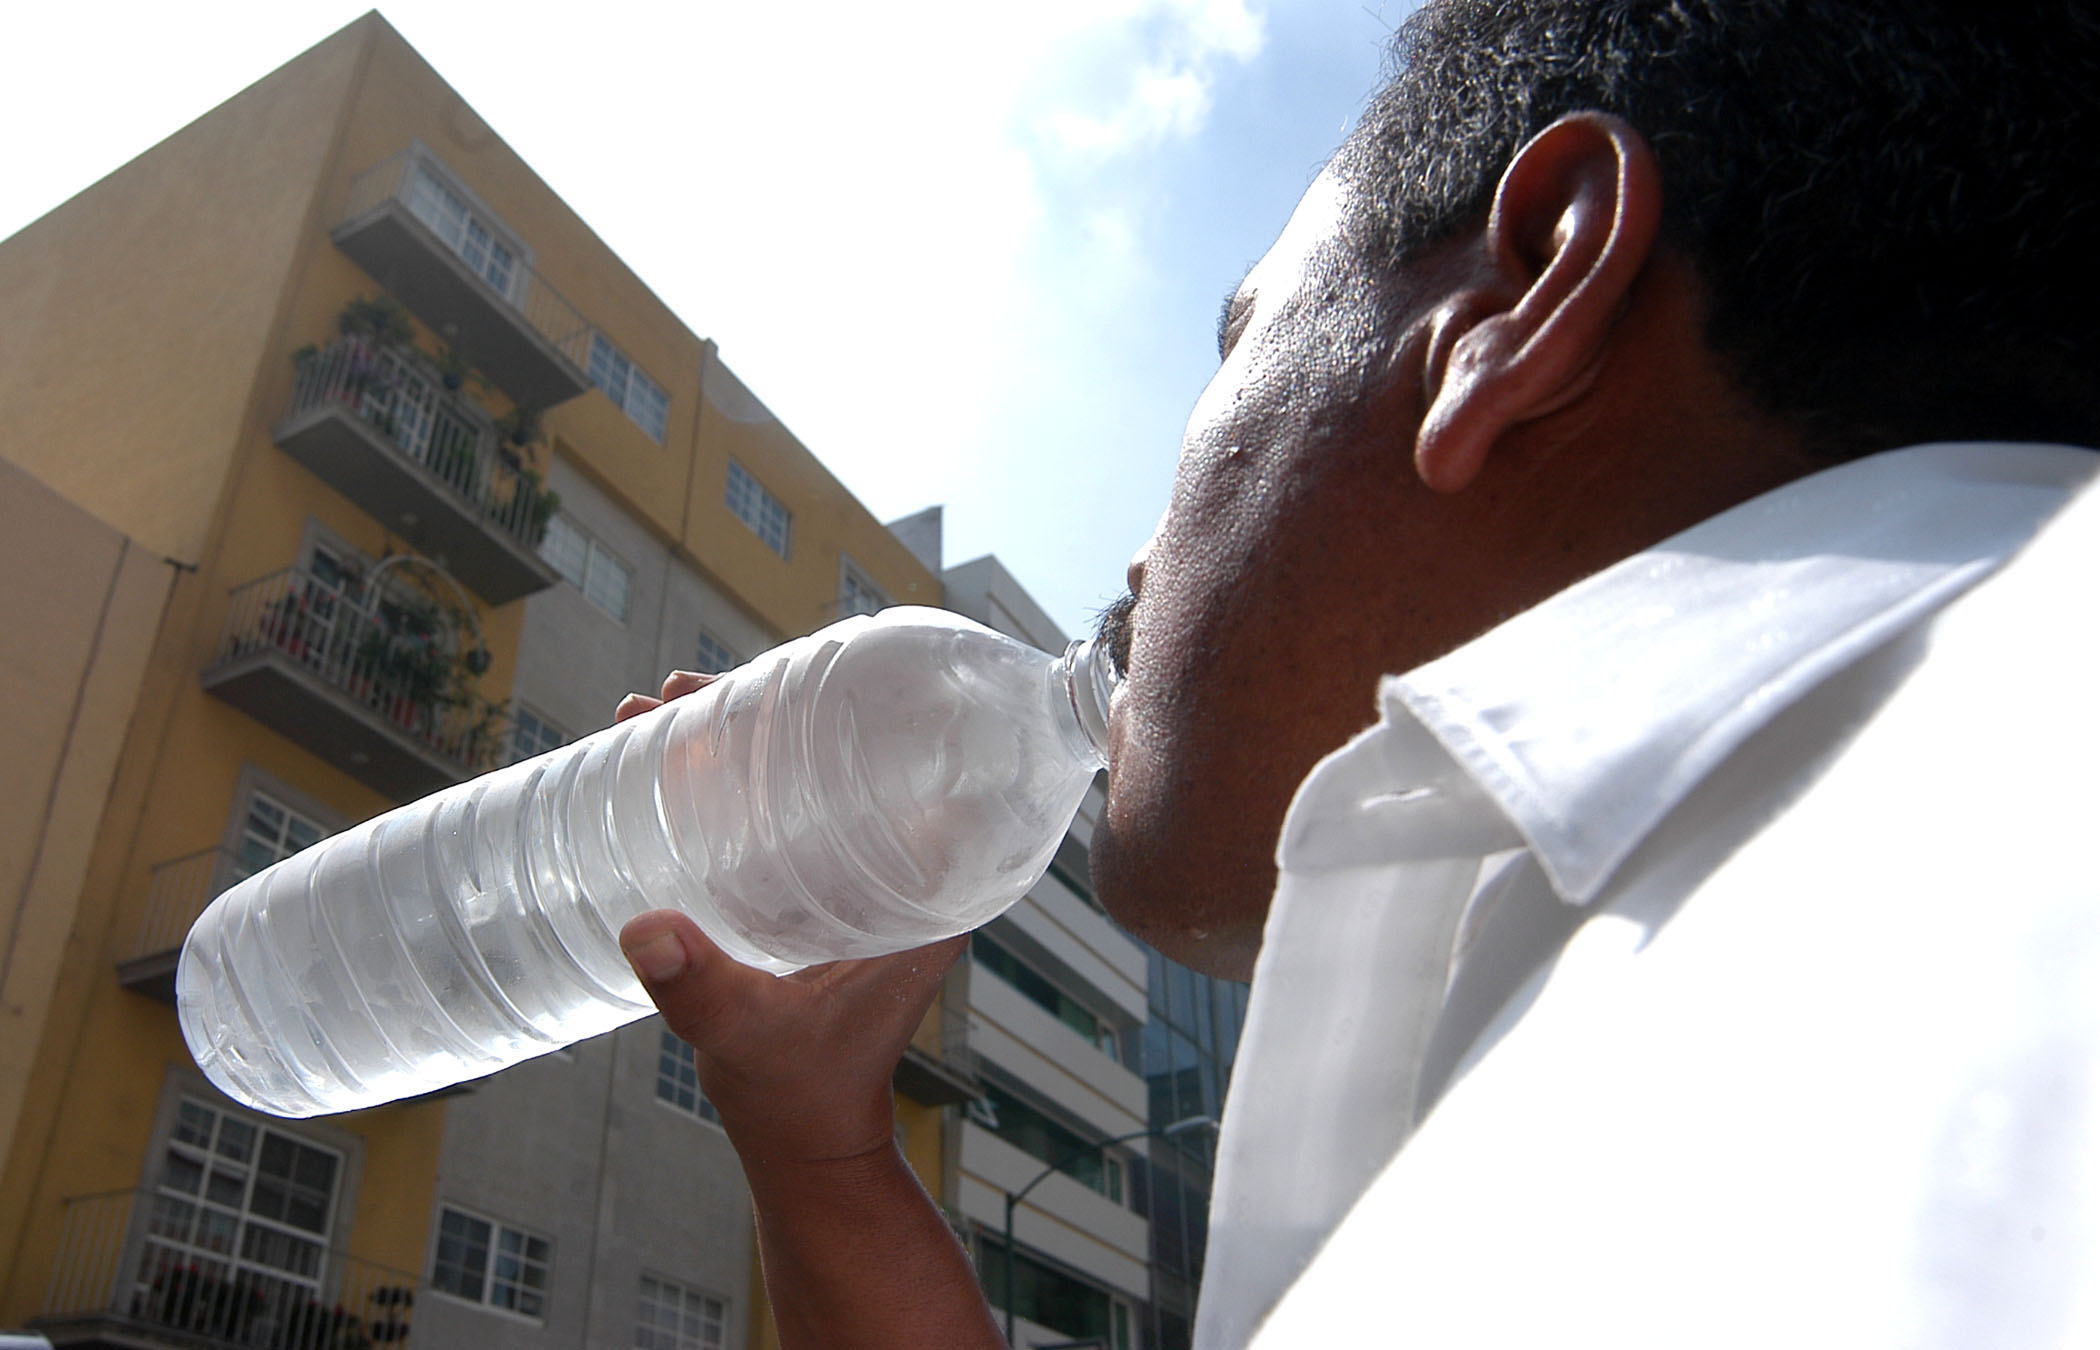 Mantener una constante hidratación, beber un mínimo de dos y hasta tres litros de agua durante todo el día, a fin de prevenir la deshidratación y el golpe de calor